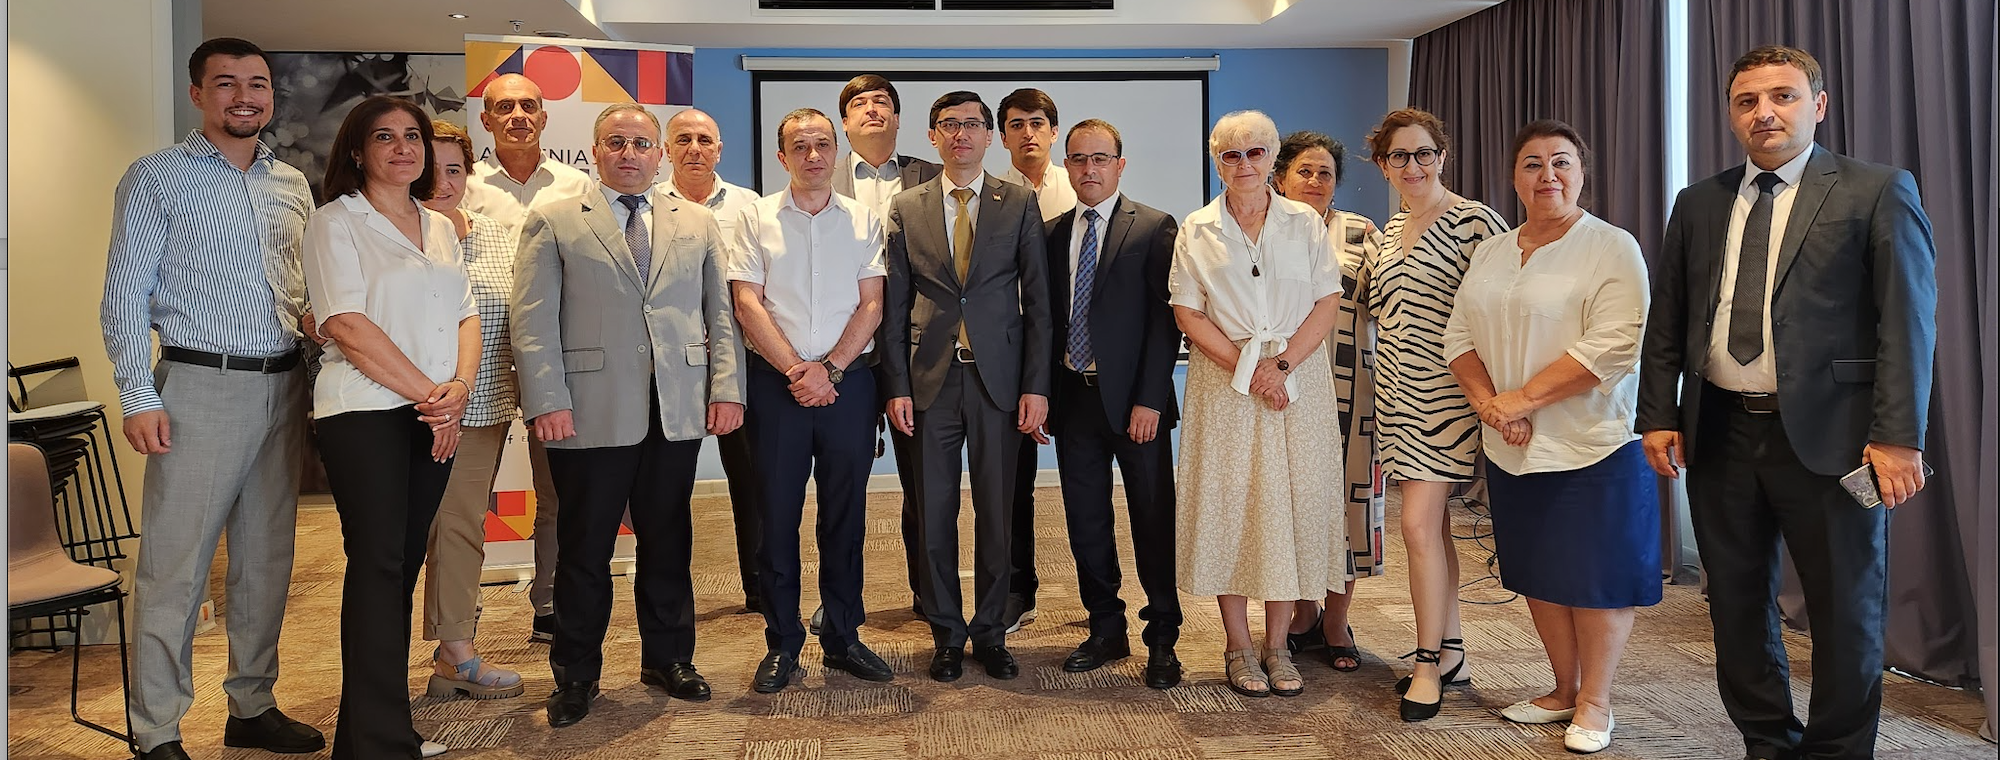 Տաջիկստանի ԱՃԹՆ-ի բազմաշահառու խմբի պատվիրակության այցը Հայաստան